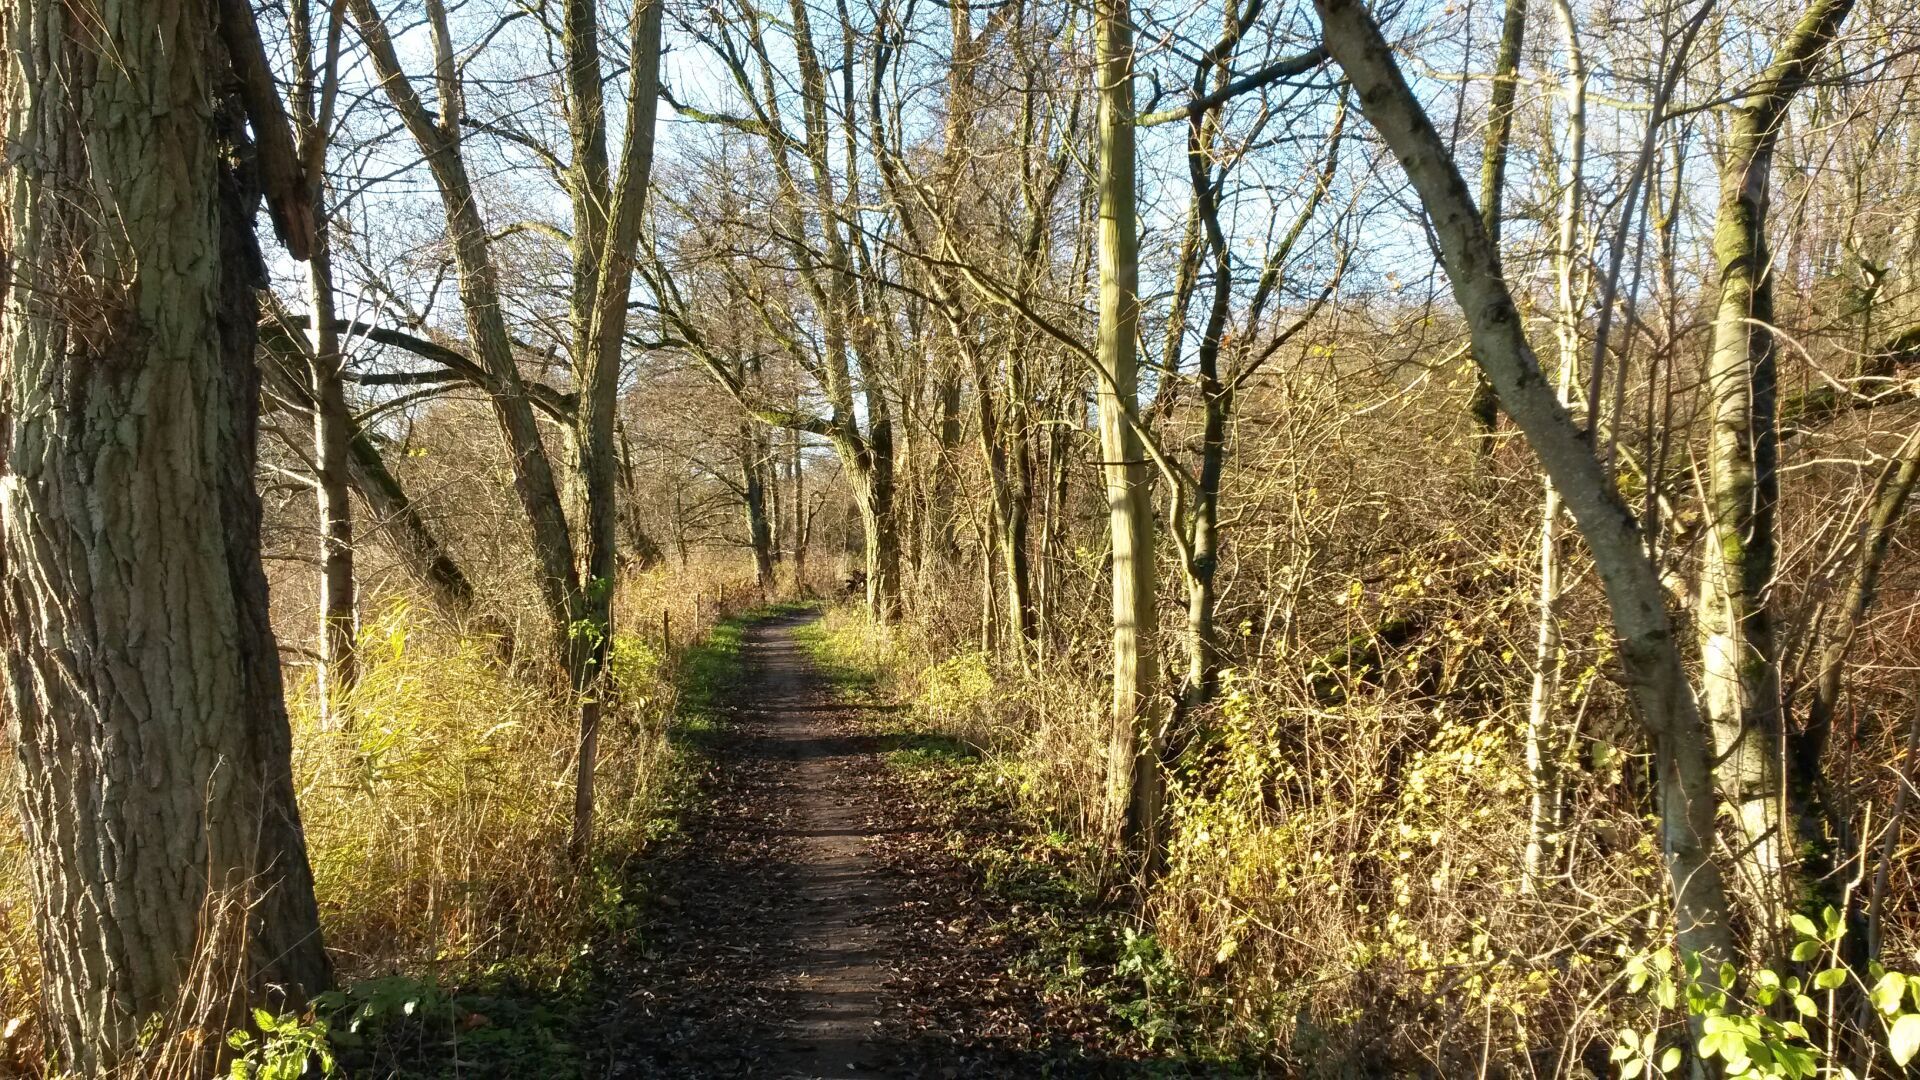 Trail in Denmark, 2014